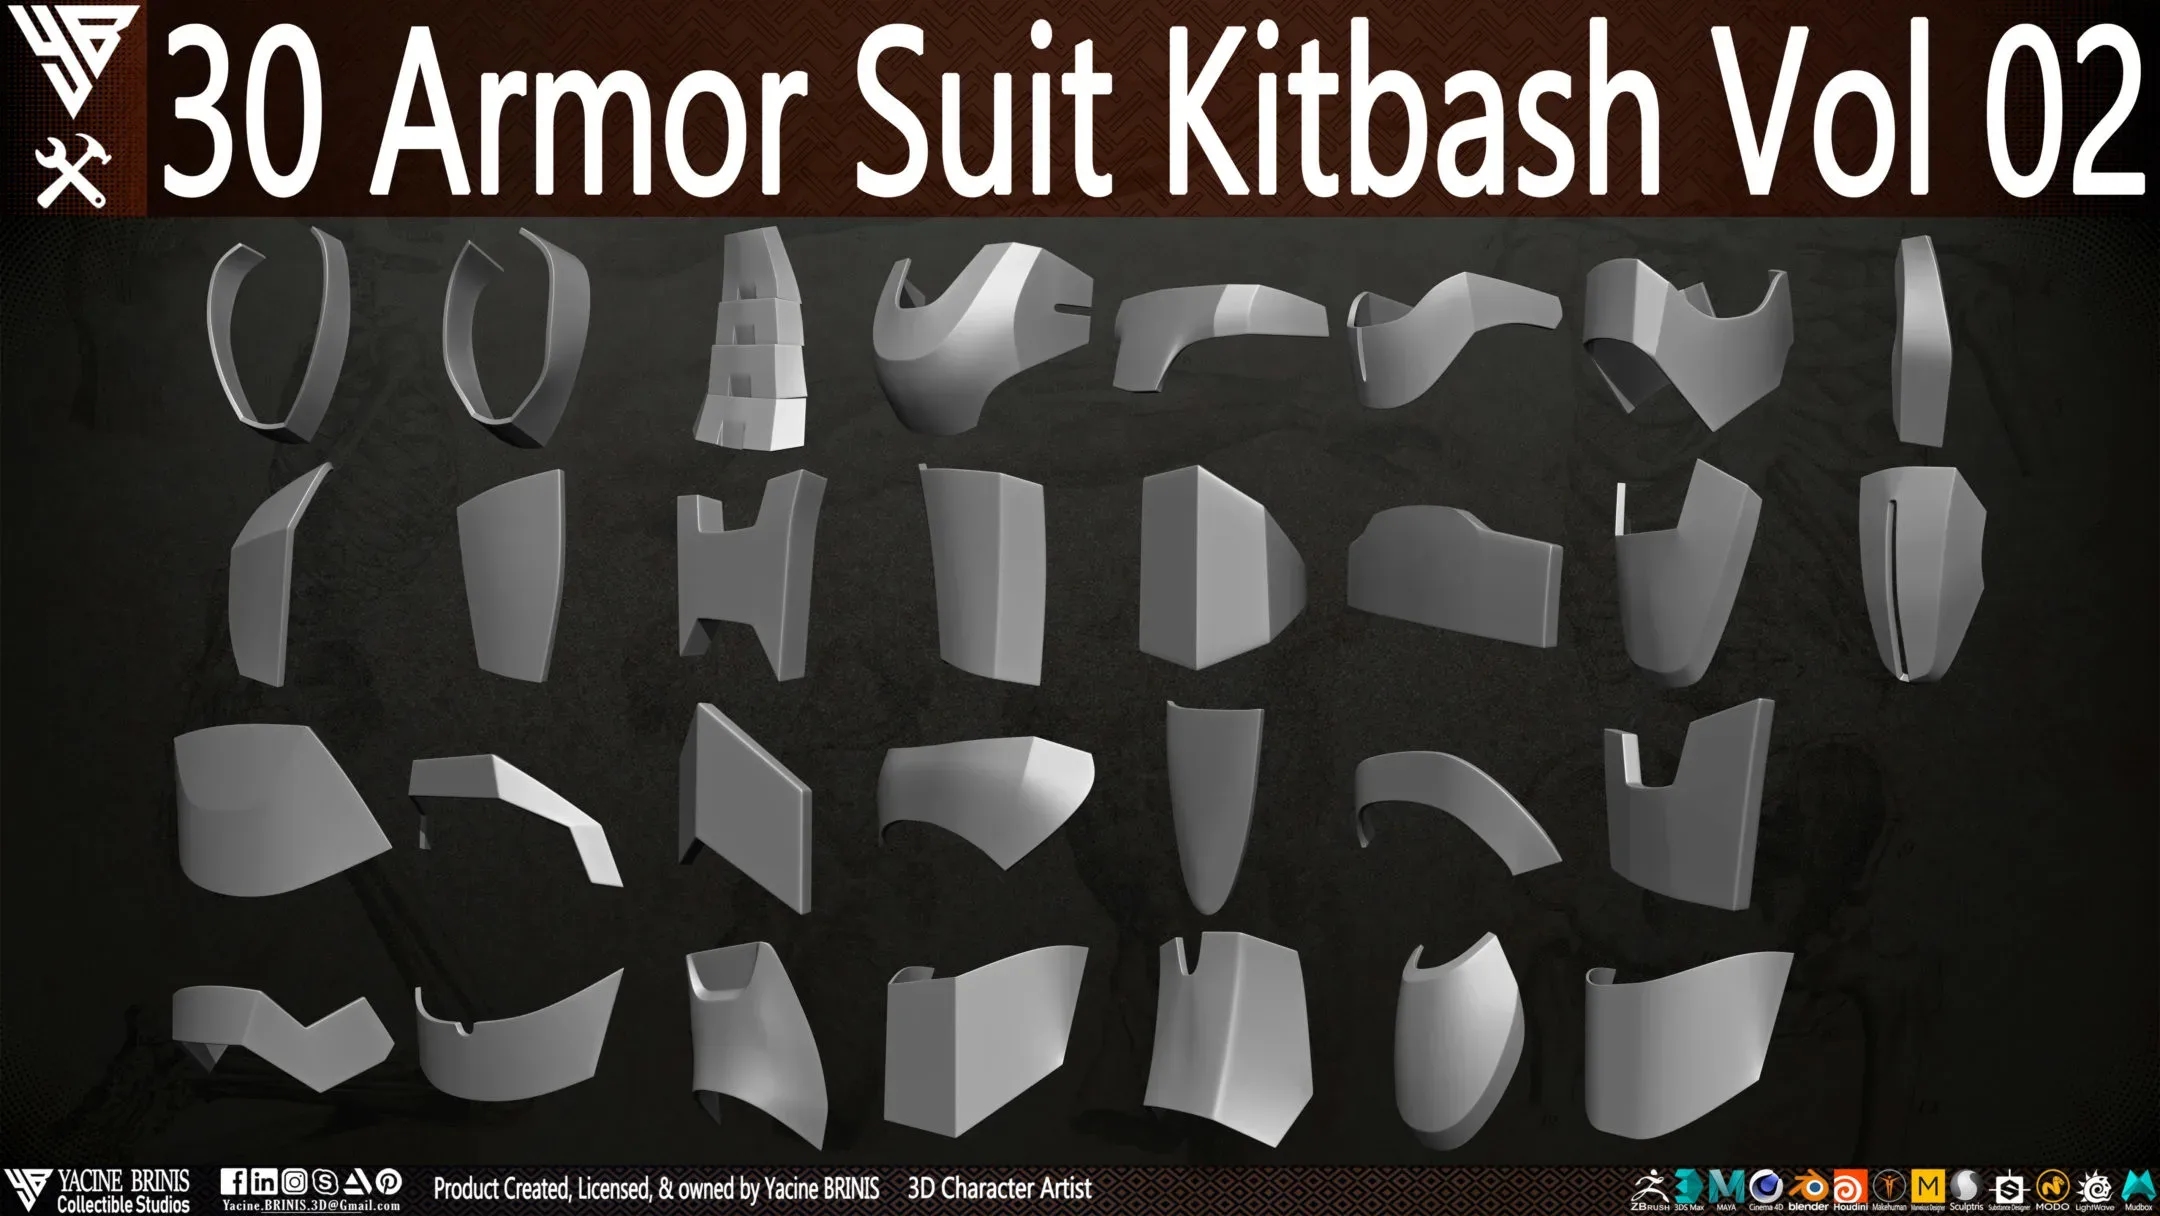 30 Armor Suit Kitbash Vol 02